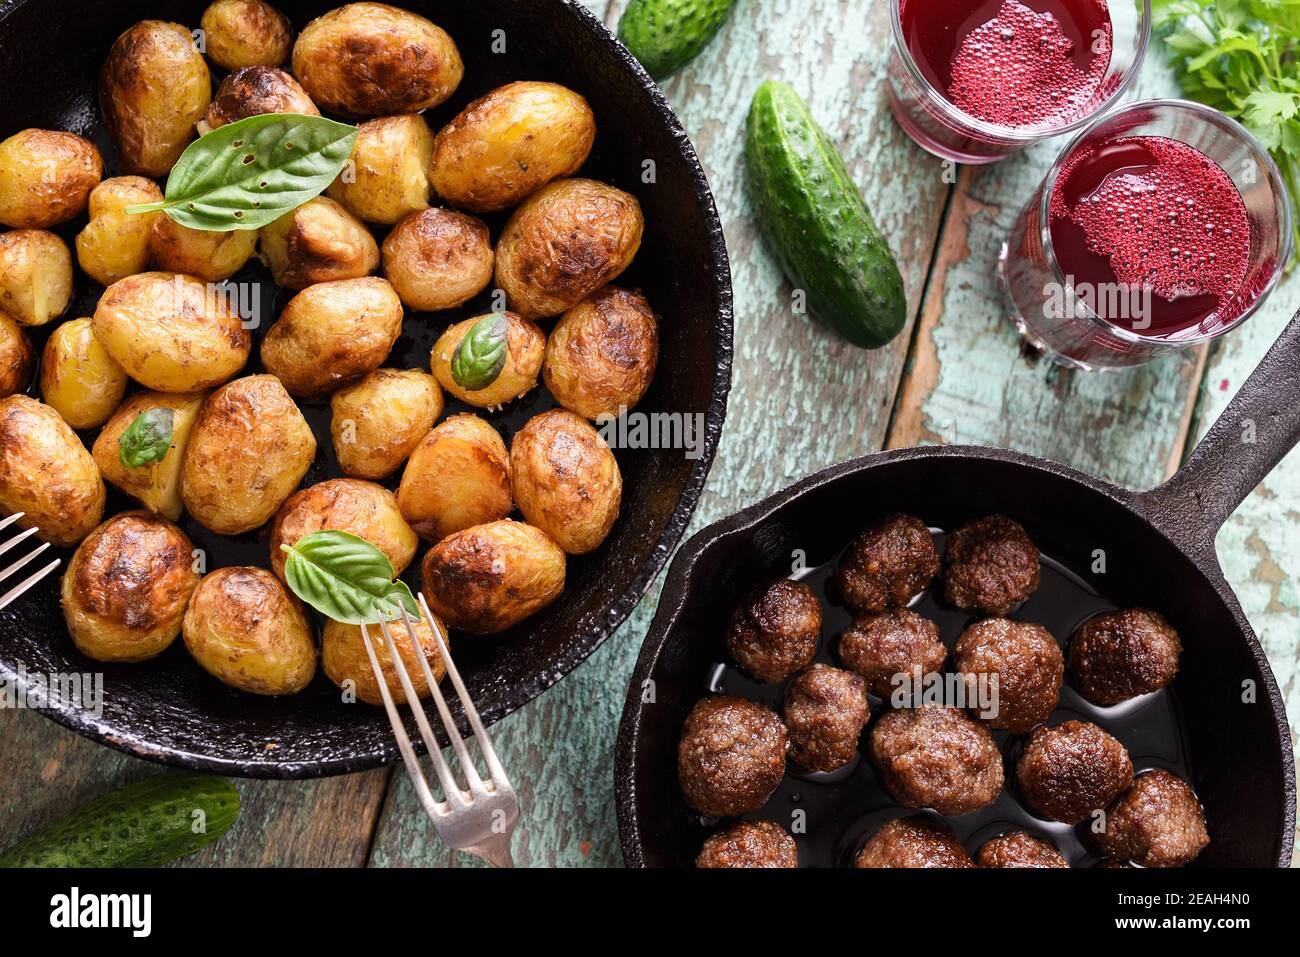 Cuisine scandinave. Pommes de terre frites, boulettes de viande et boisson aux baies de lingonberry servies avec des légumes et des herbes sur une table bleue rustique avec vue au plafond Banque D'Images